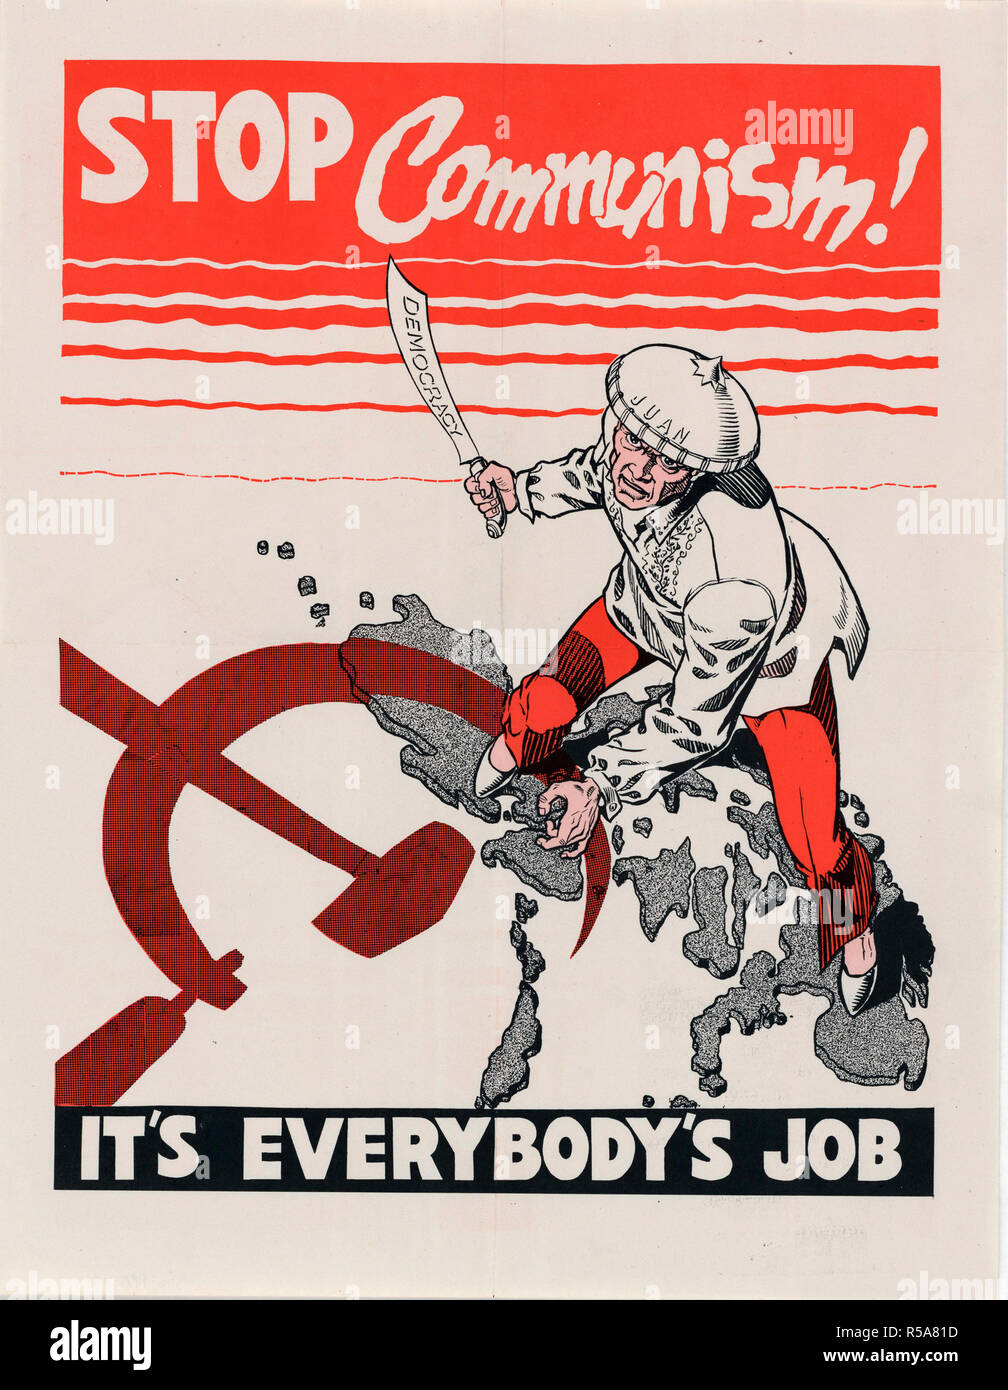 8/13/1951 - U.S. Propaganda Posters in 1950s Asia - 8/13/1951 - U.S. Propaganda Posters in 1950s Asia - Stop Communism Stock Photo